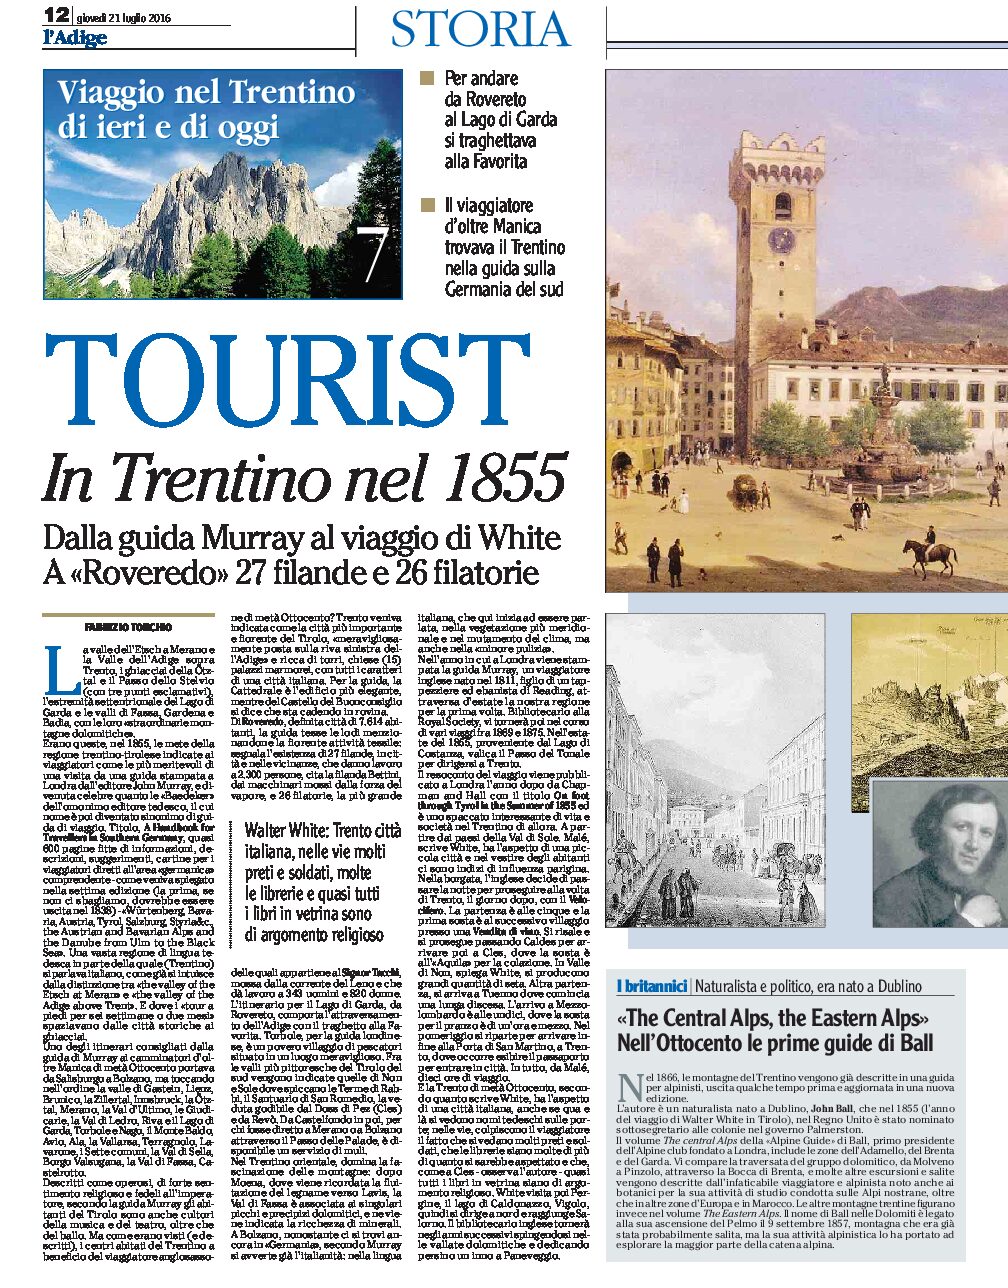 Viaggio nella storia: In Trentino nel 1855